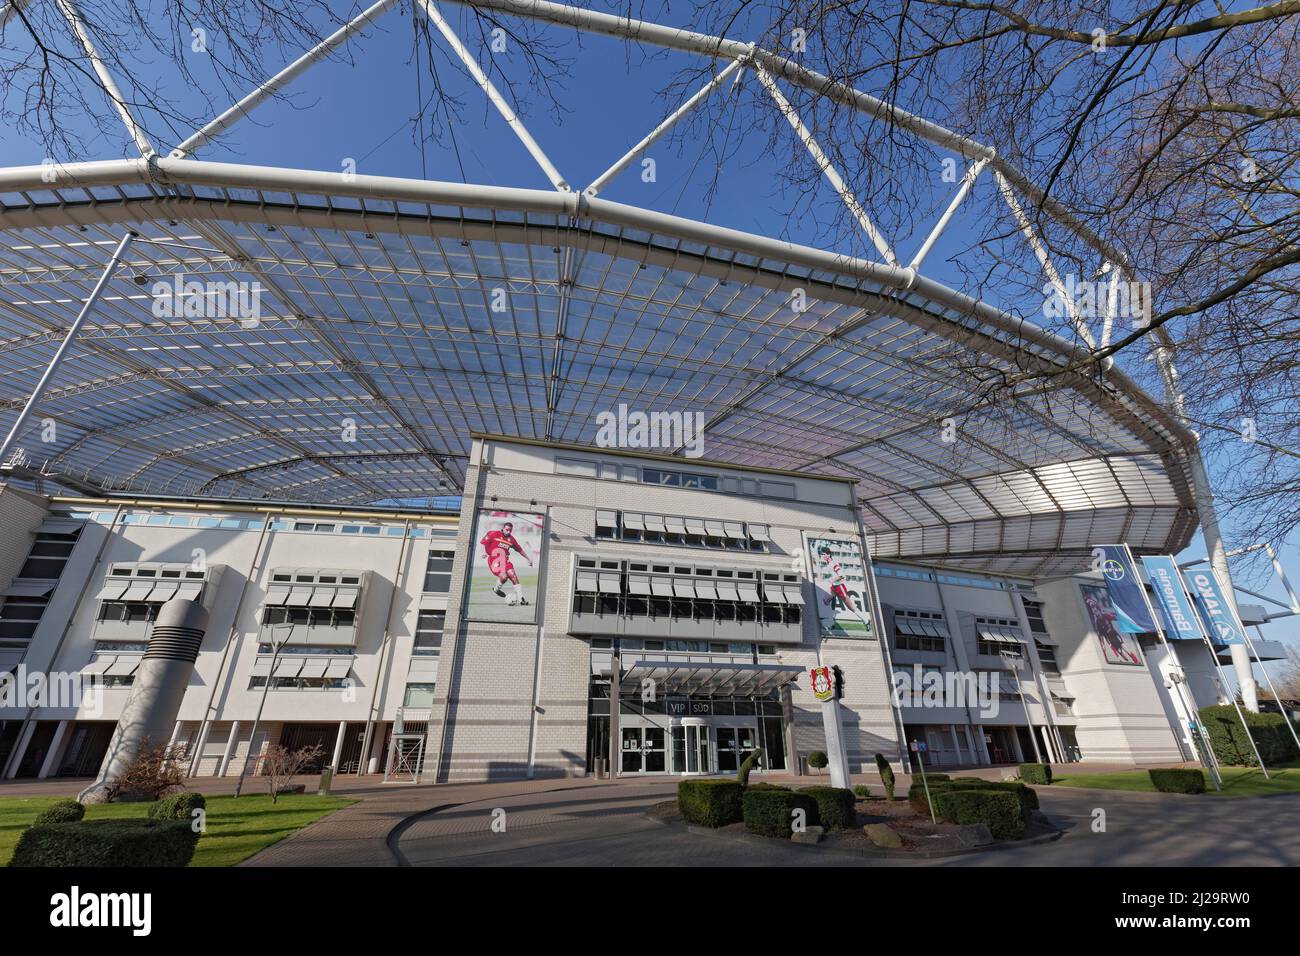 Stadium BayArena, football stadium Bayer 04 Leverkusen, North Rhine-Westphalia, Germany Stock Photo